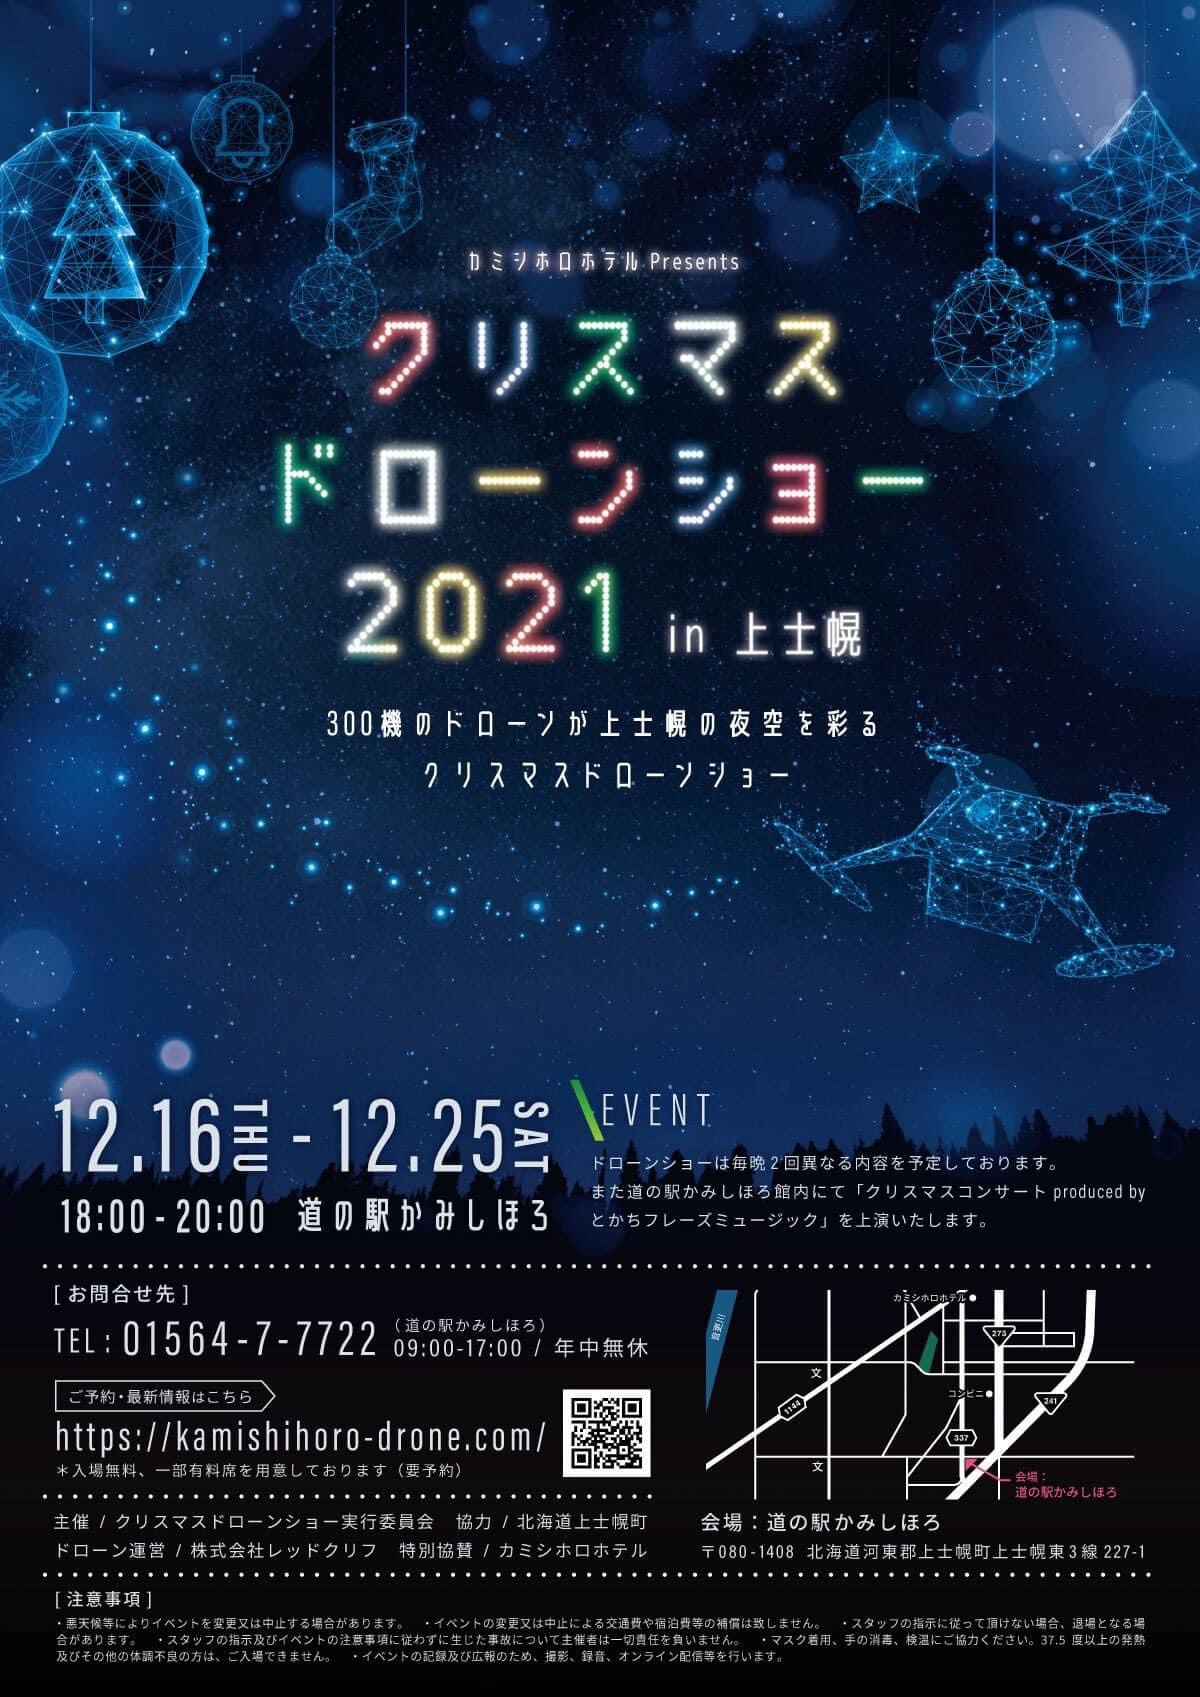 クリスマスドローンショー2021 in 上士幌の画像